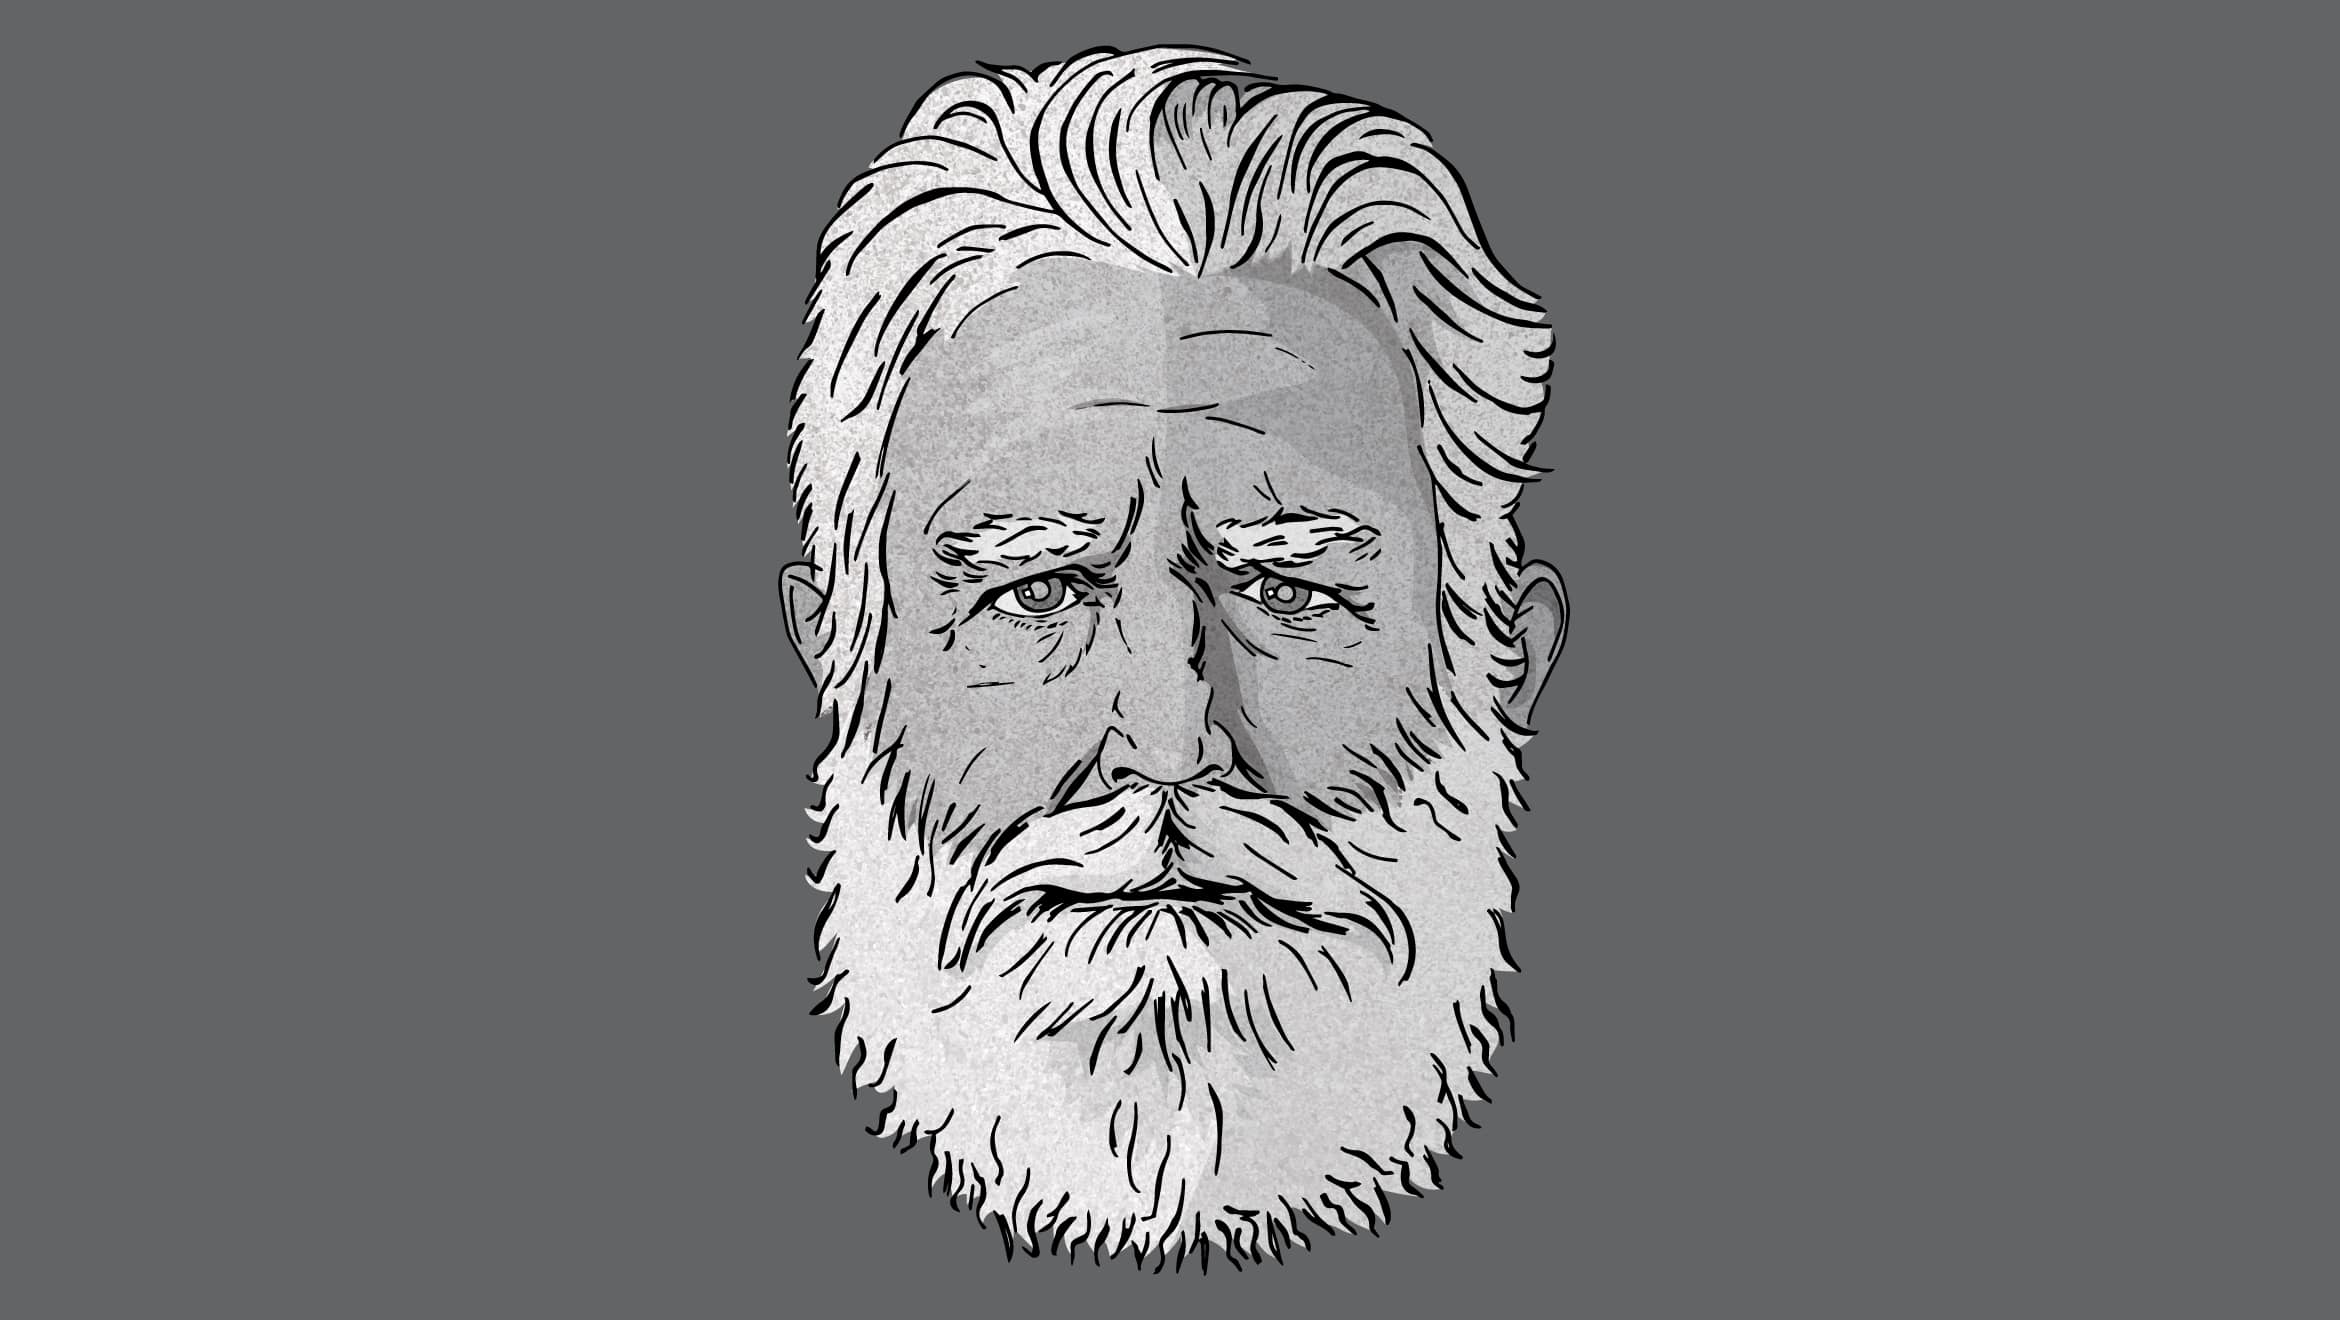 illustration of face of older man